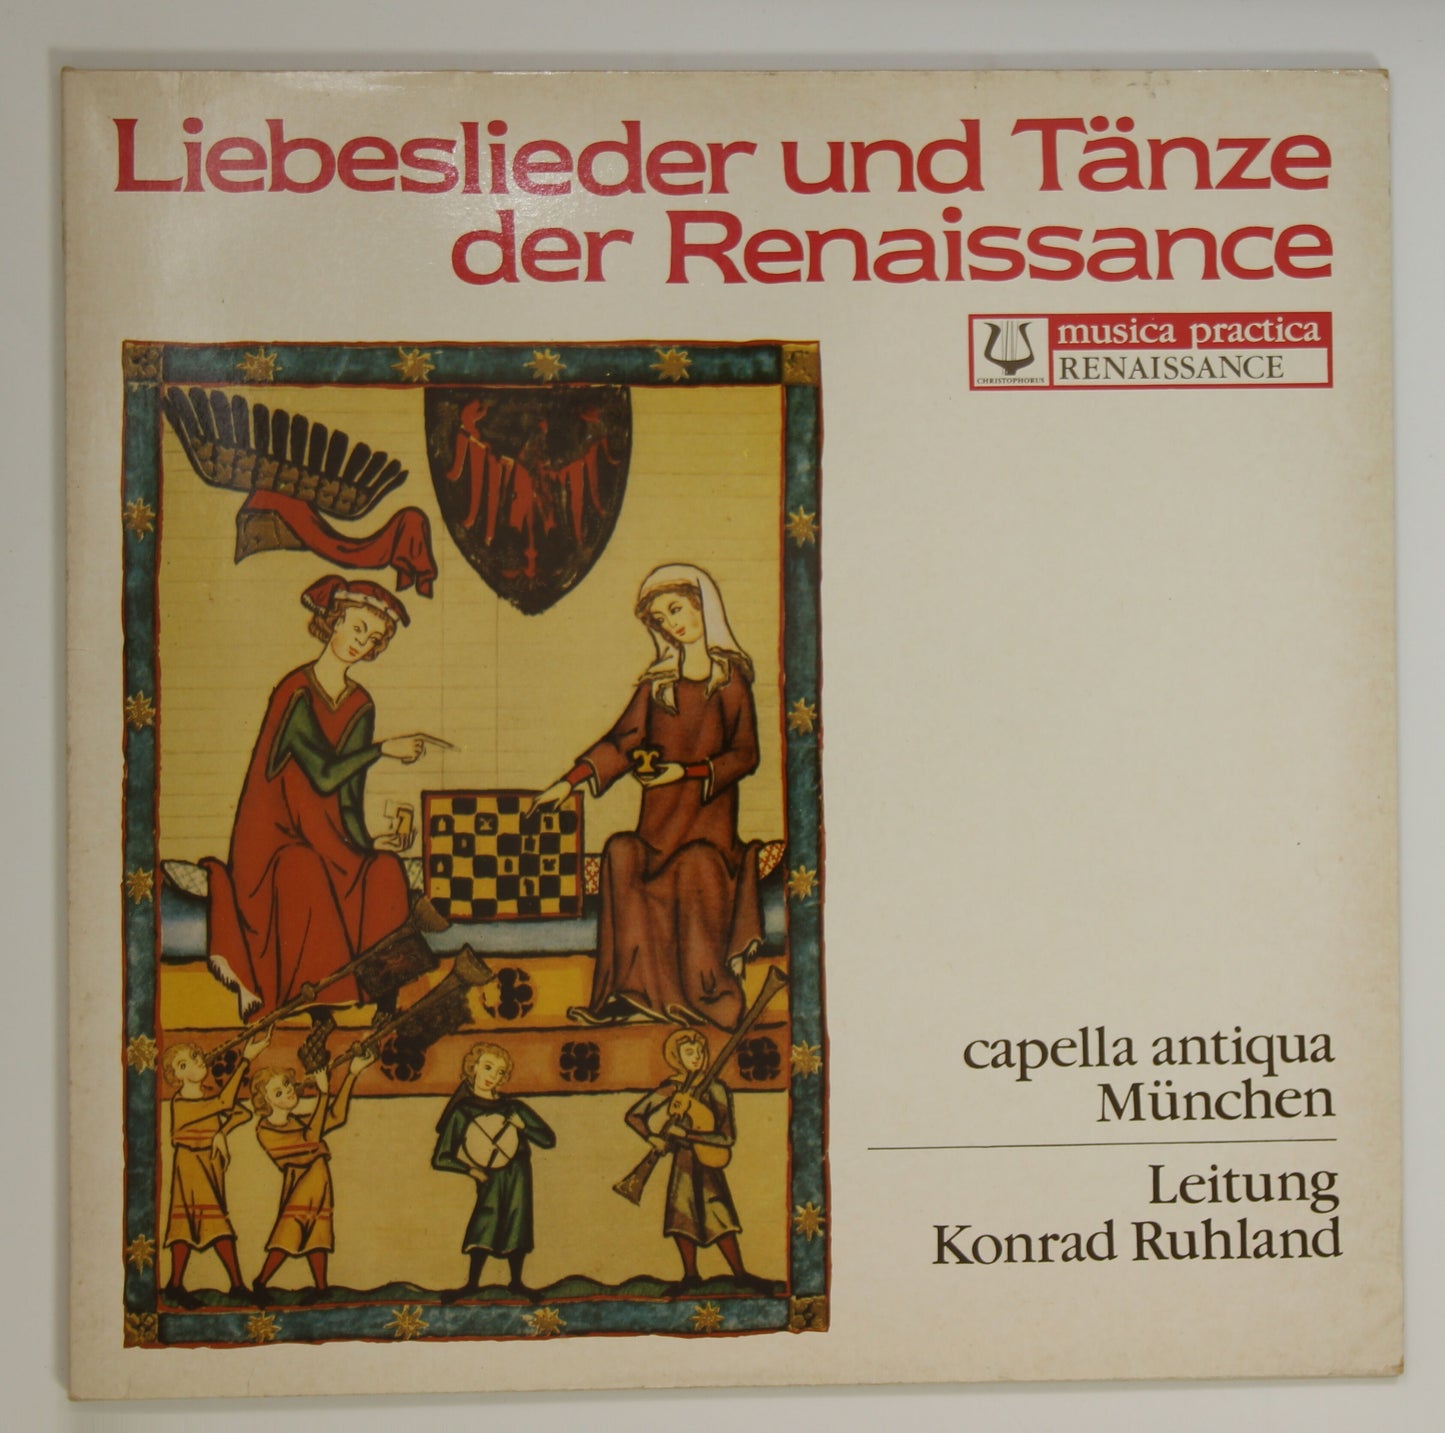 コンラート・ルーランド(指揮) / ルネッサンスの音楽(16世紀)